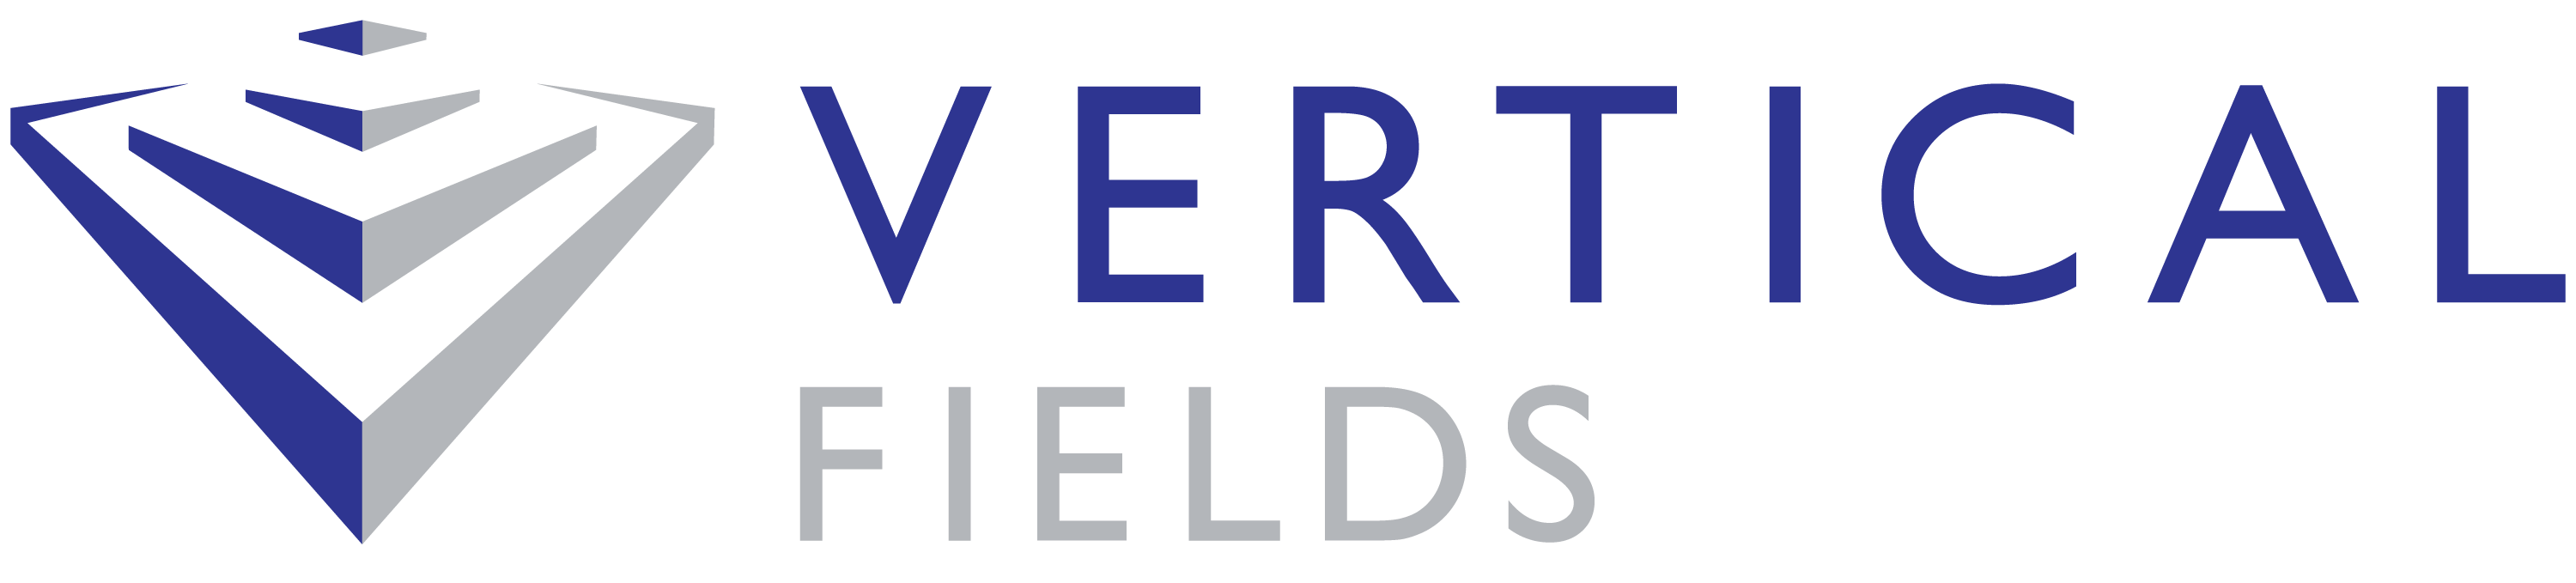 Vertical fields capital llc logo